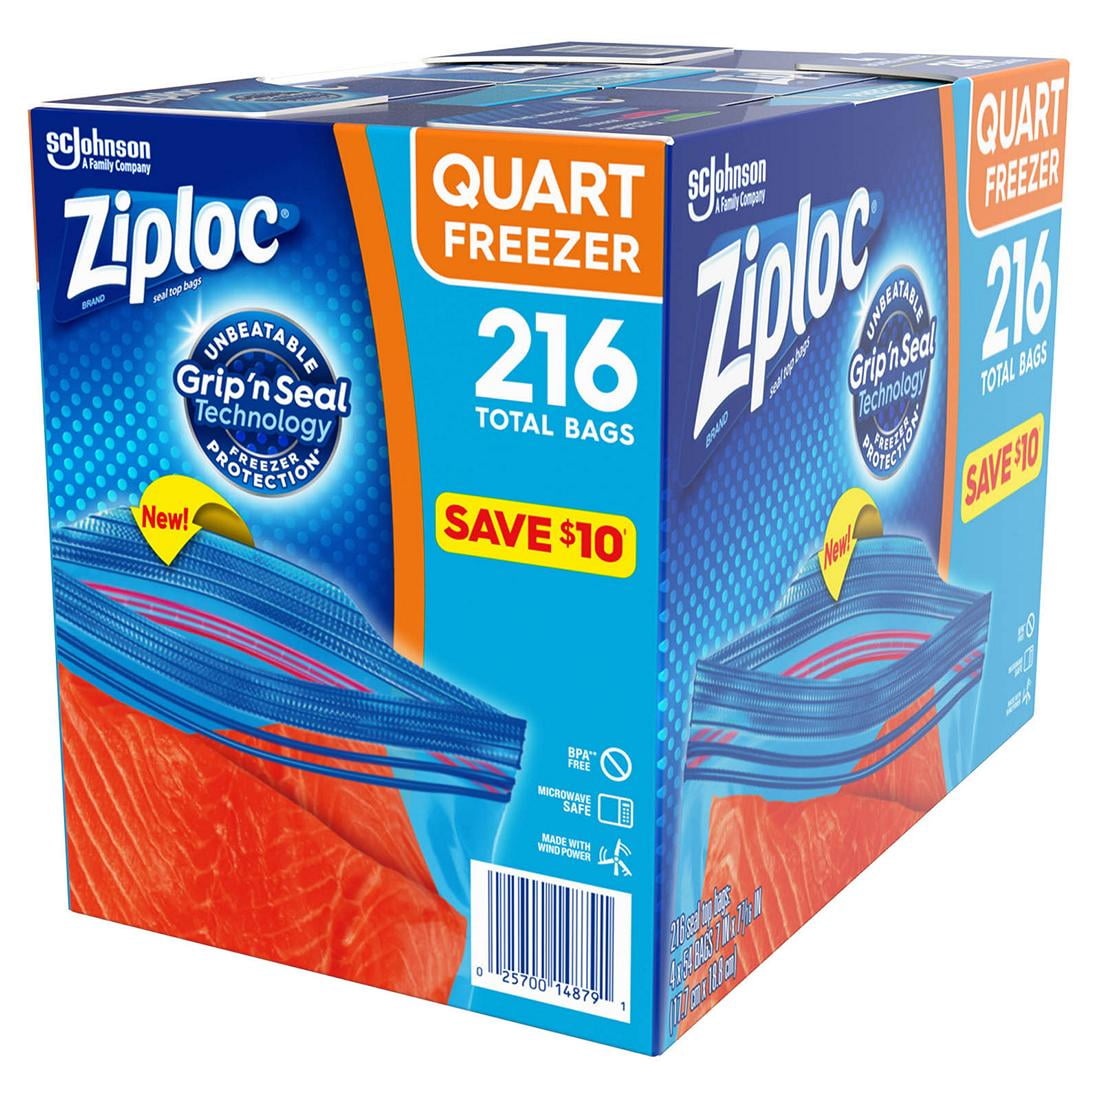 Ziploc Quart Freezer Bags, 216 ct